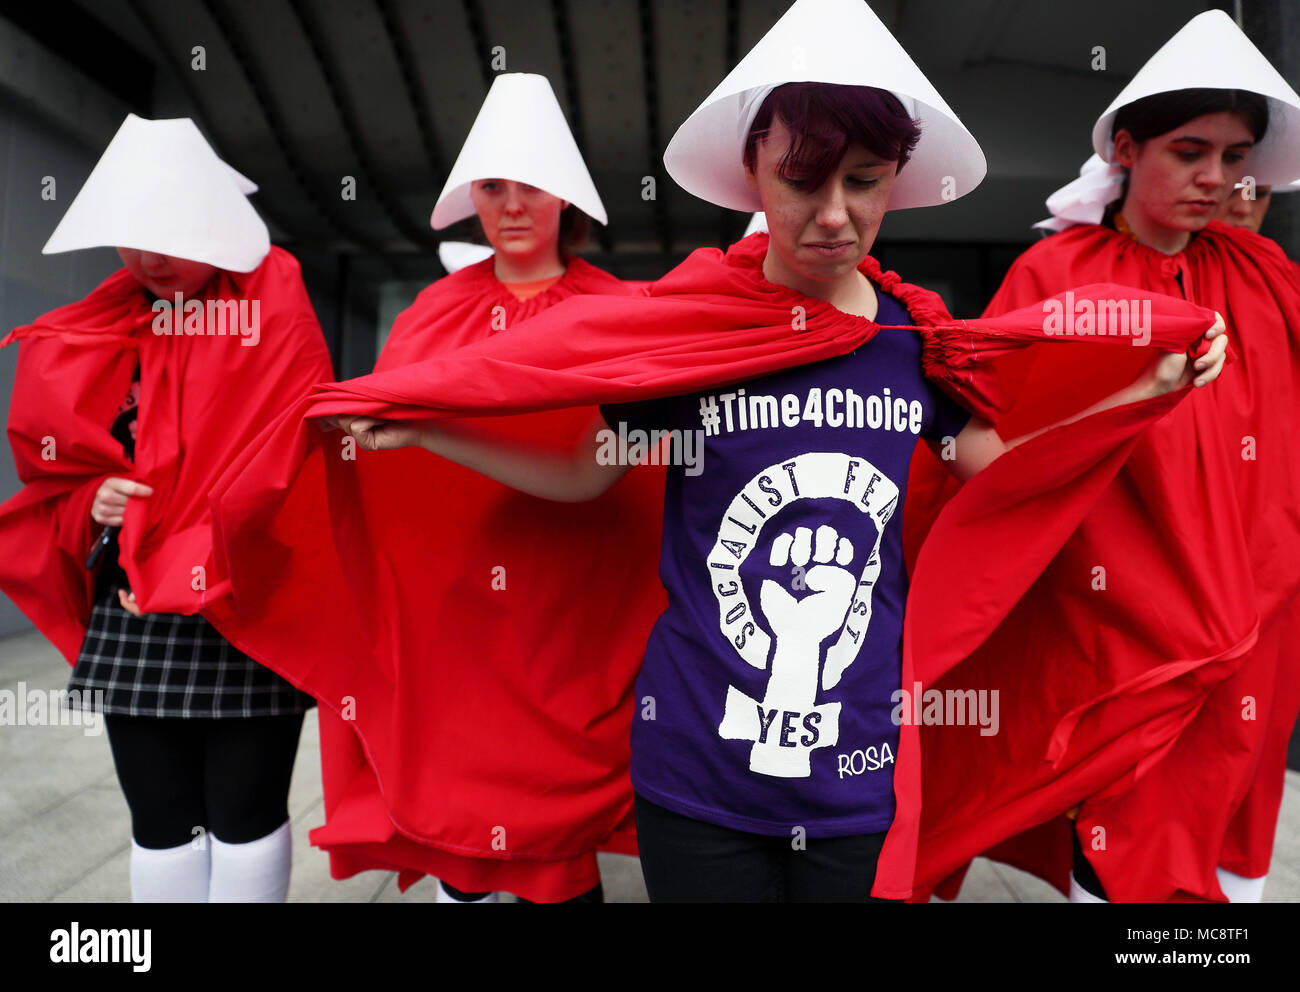 ROSA-AktivistInnen, die als "Handmaids" gekleidet waren, bei einer von Rosa - Socialist Feminist Movement organisierten Kundgebung für Gleichheit, Freiheit und Wahl in der Liberty Hall in Dublin. Stockfoto